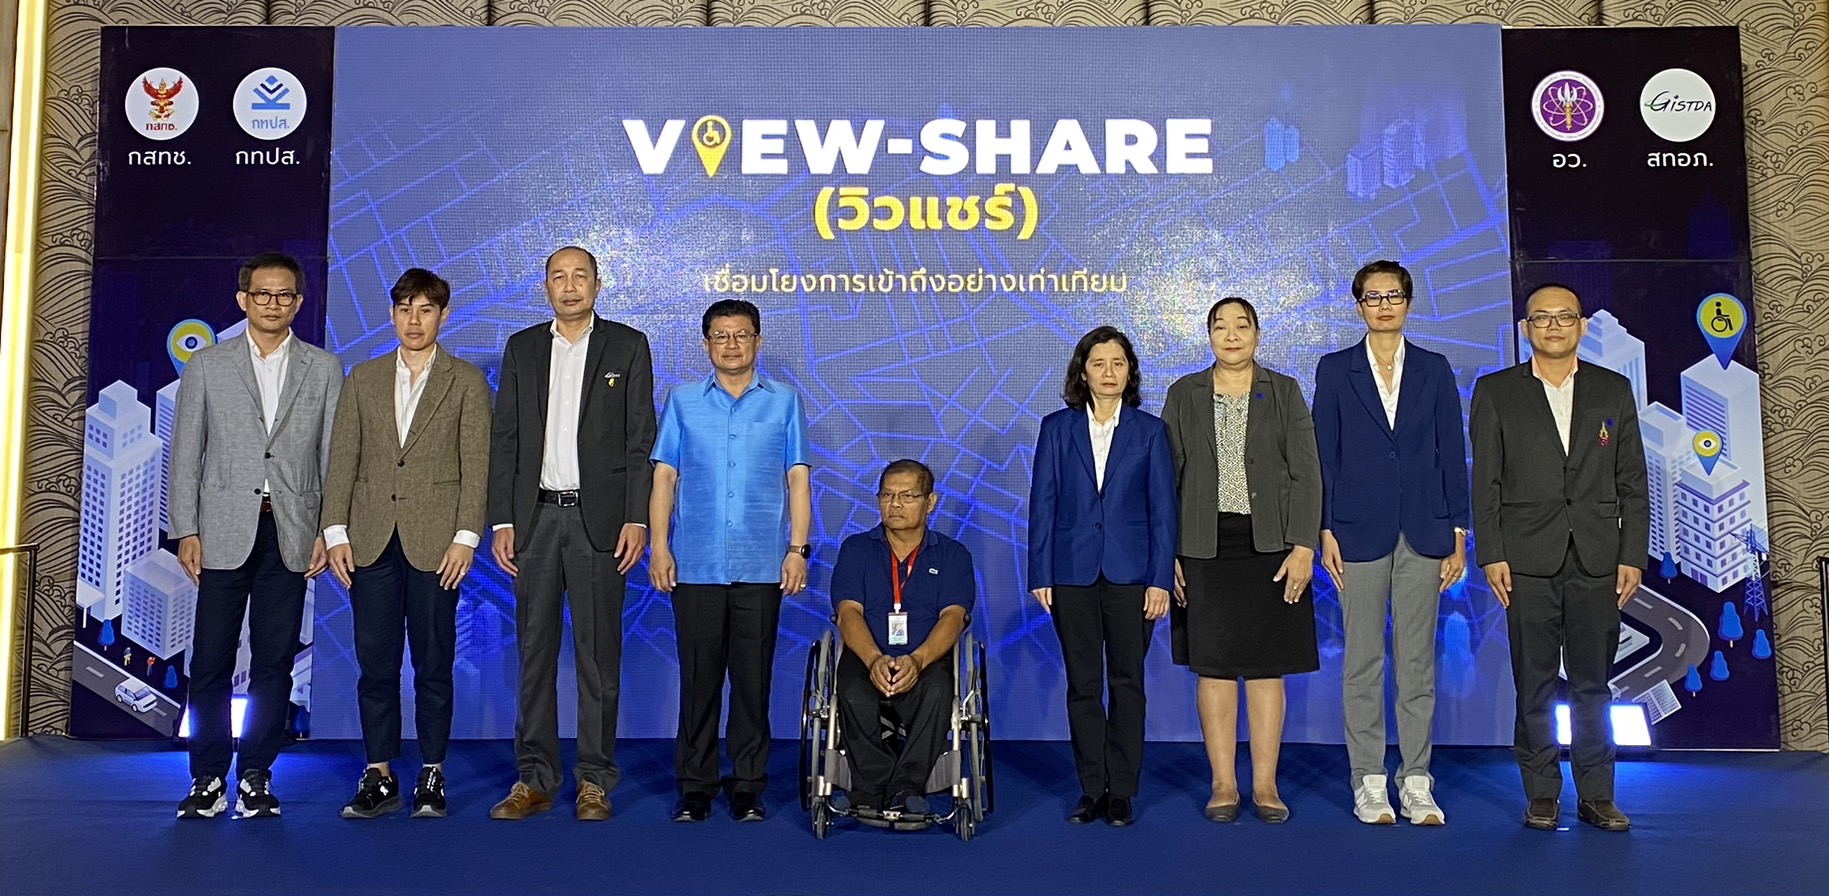 วิวแชร์ (VIEW-SHARE) ระบบแผนที่ออนไลน์เพื่อสร้างความเท่าเทียม อำนวยความสะดวกให้กับผู้พิการที่ใช้วีลแชร์